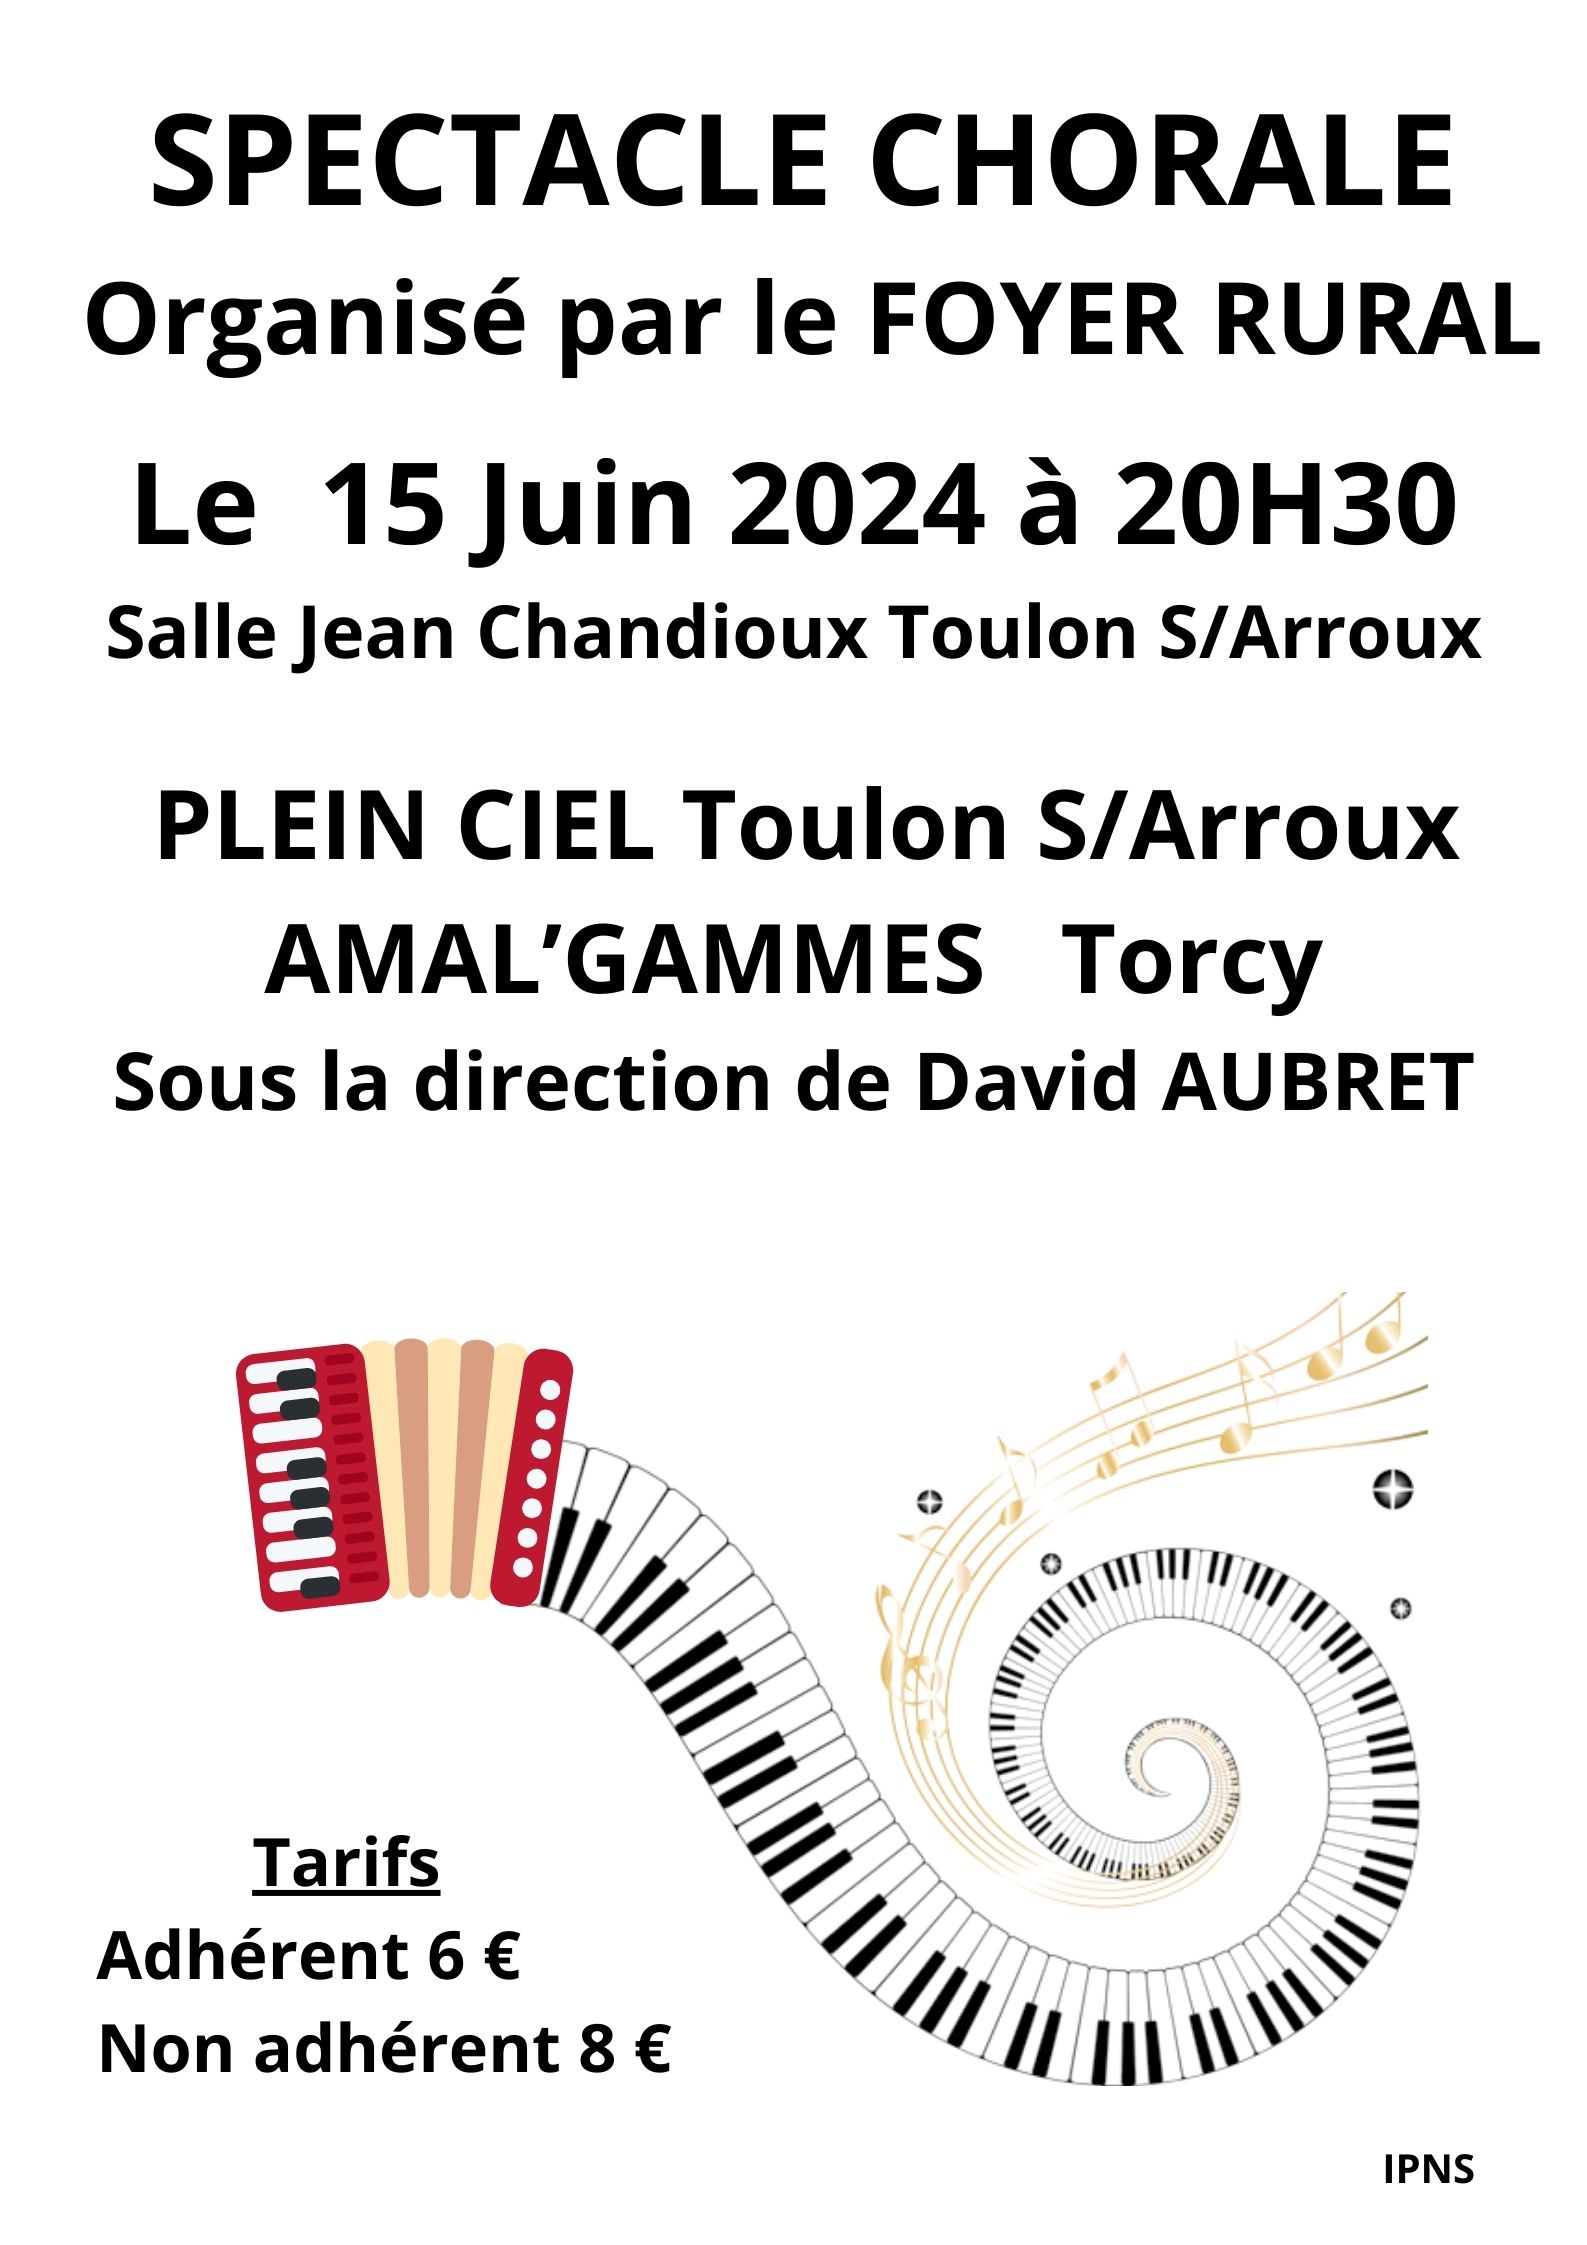 Spectacle chorale à Toulon-sur-Arroux